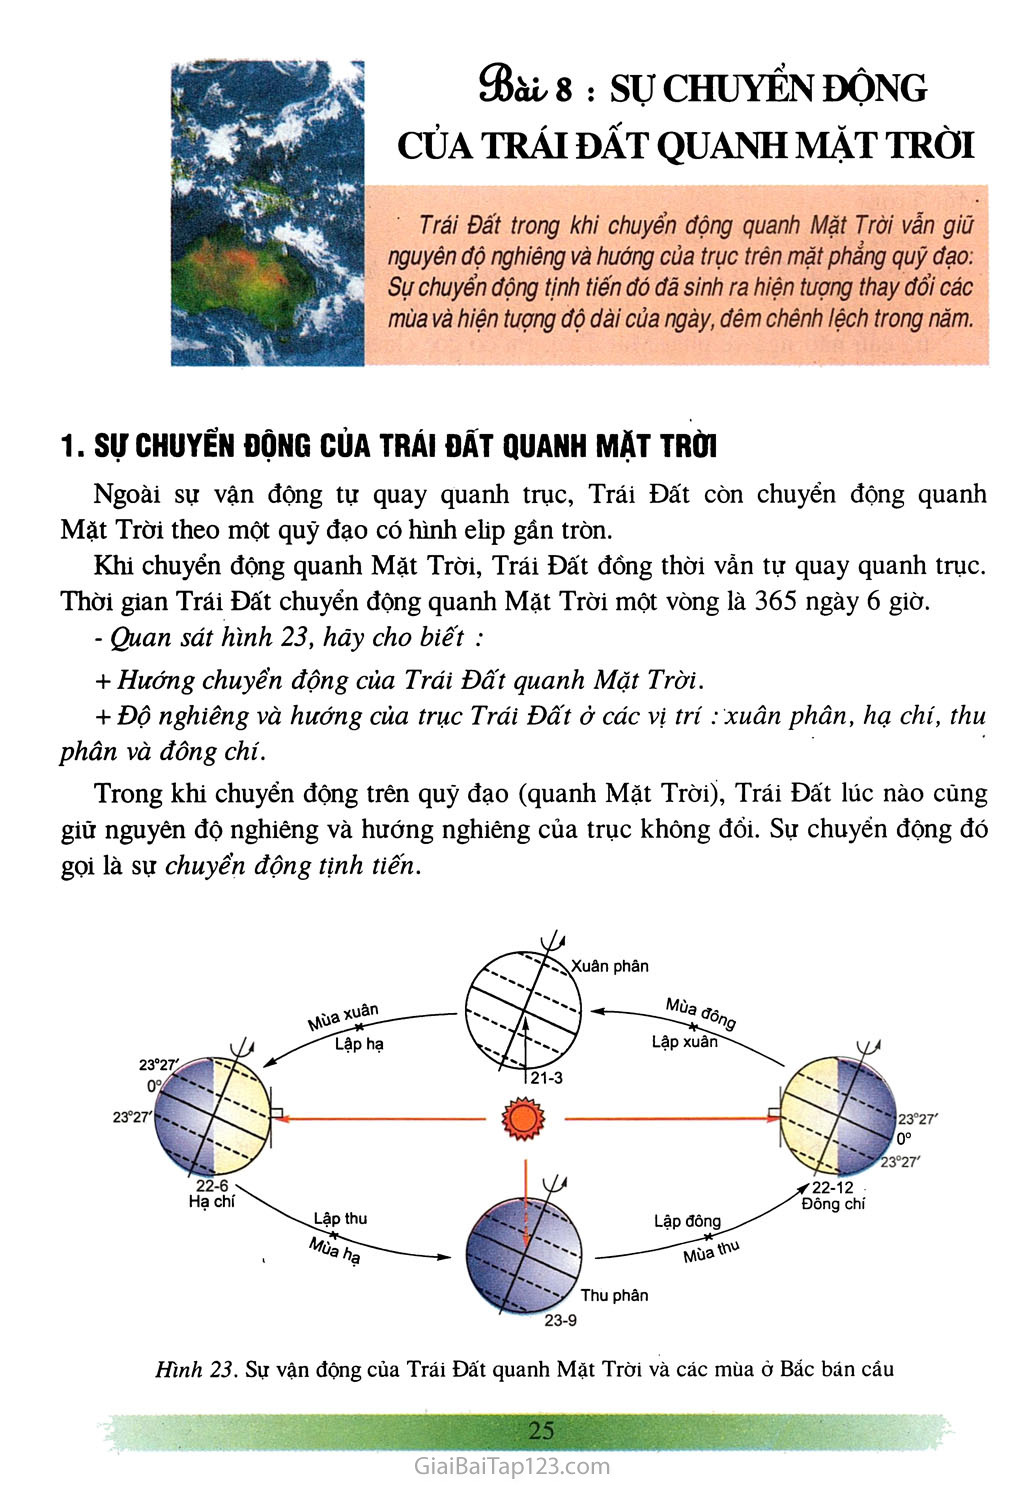 Bài 8: Sự chuyển động của Trái Đất quanh Mặt Trời (1 tiết) trang 1